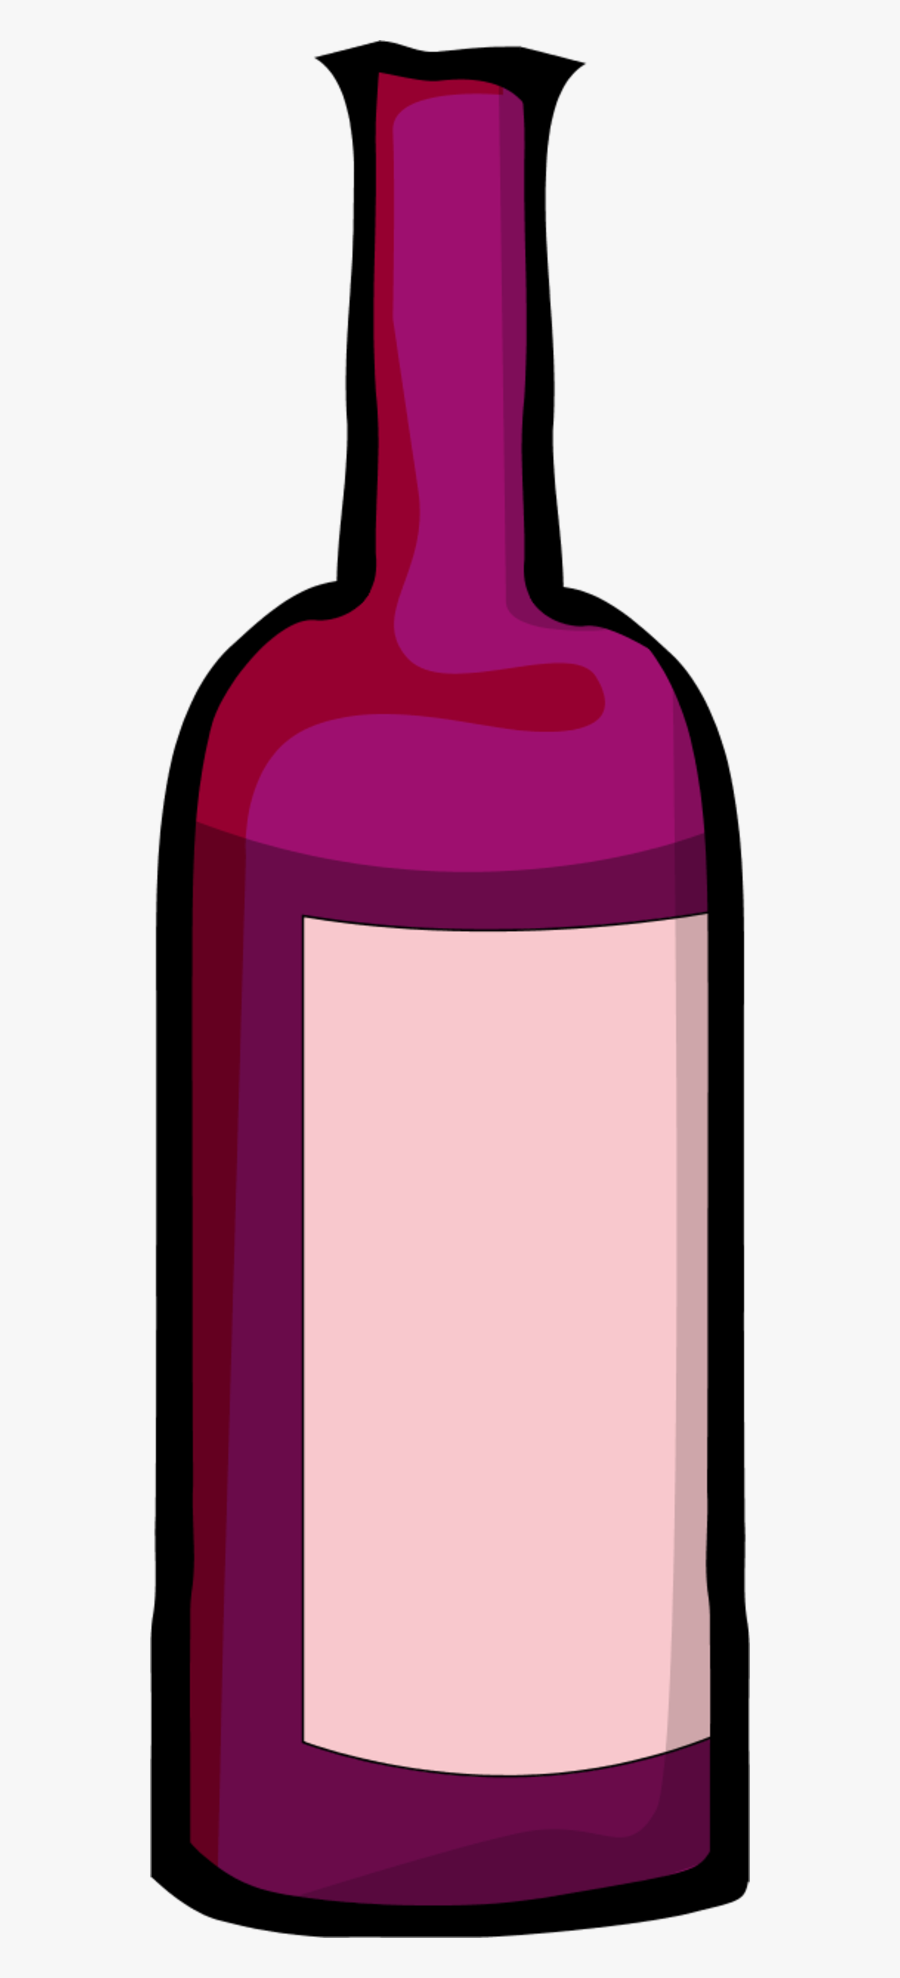 Clipart Bottle Of Wine Transparent, Transparent Clipart